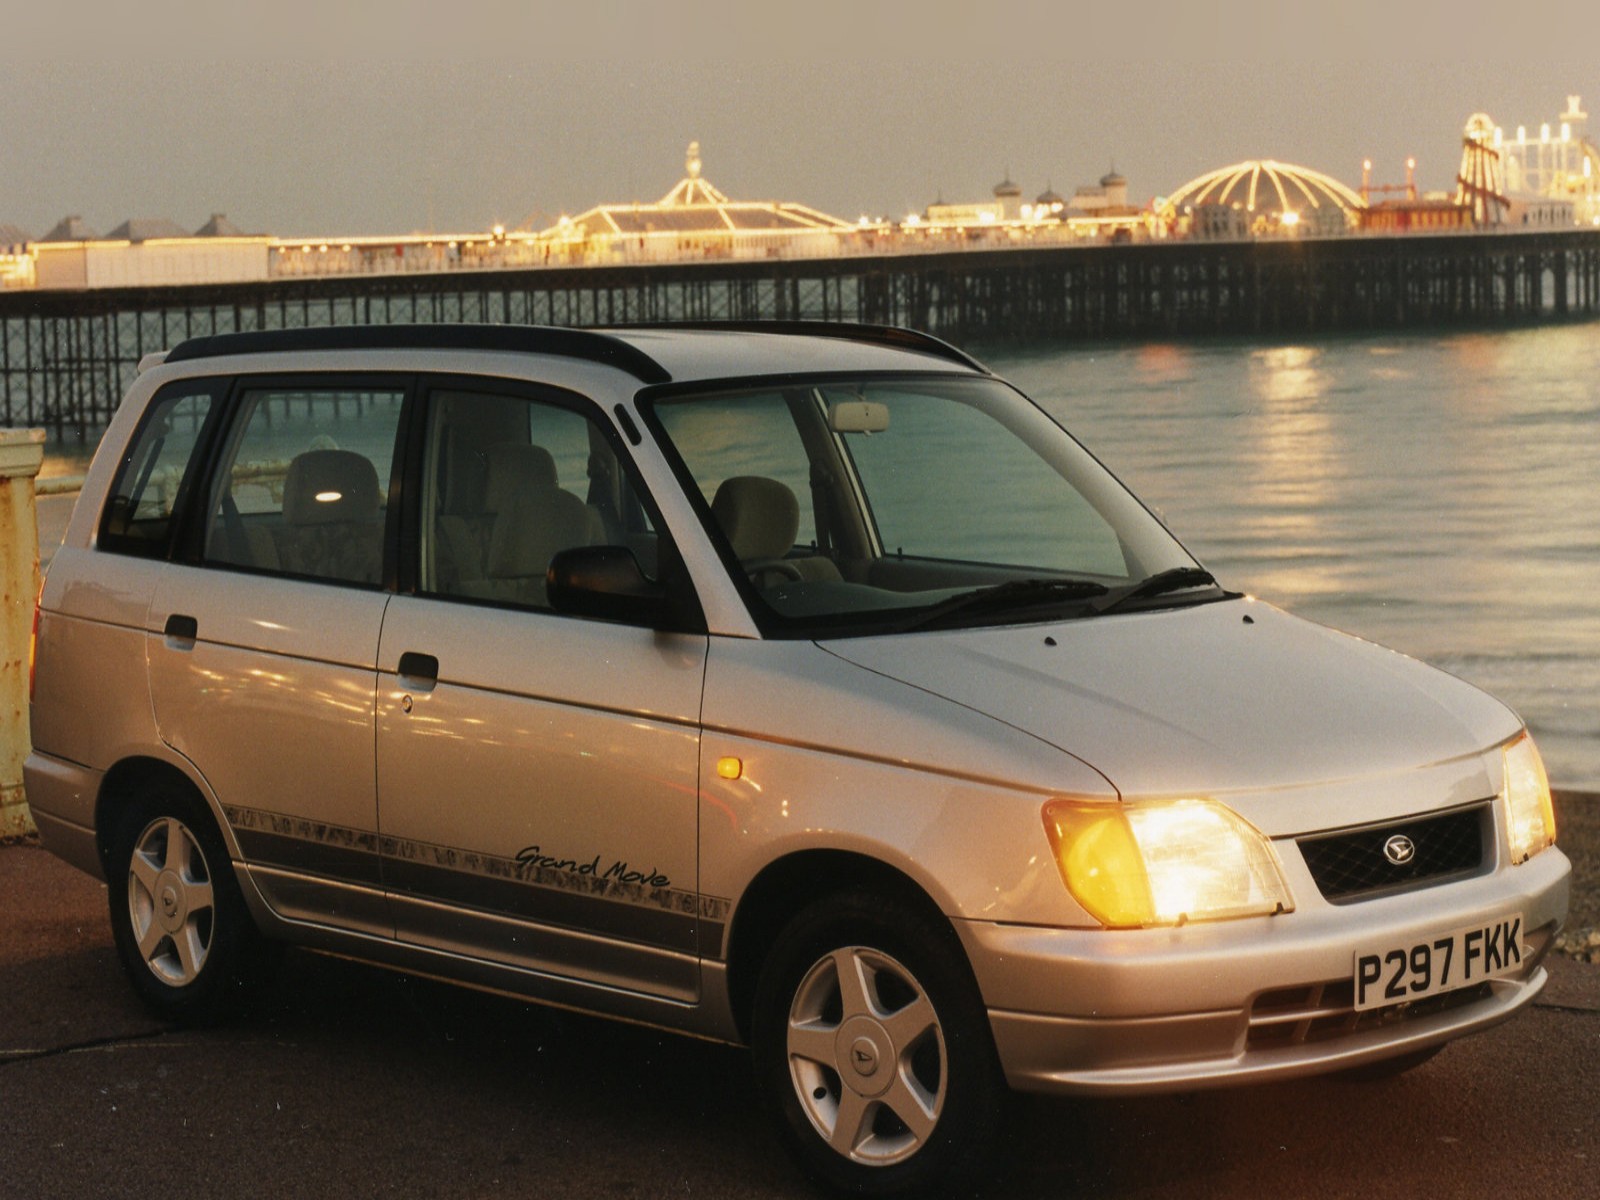 Car And Car Zone: Daihatsu Grand Move 1999 new cars, car reviews ...